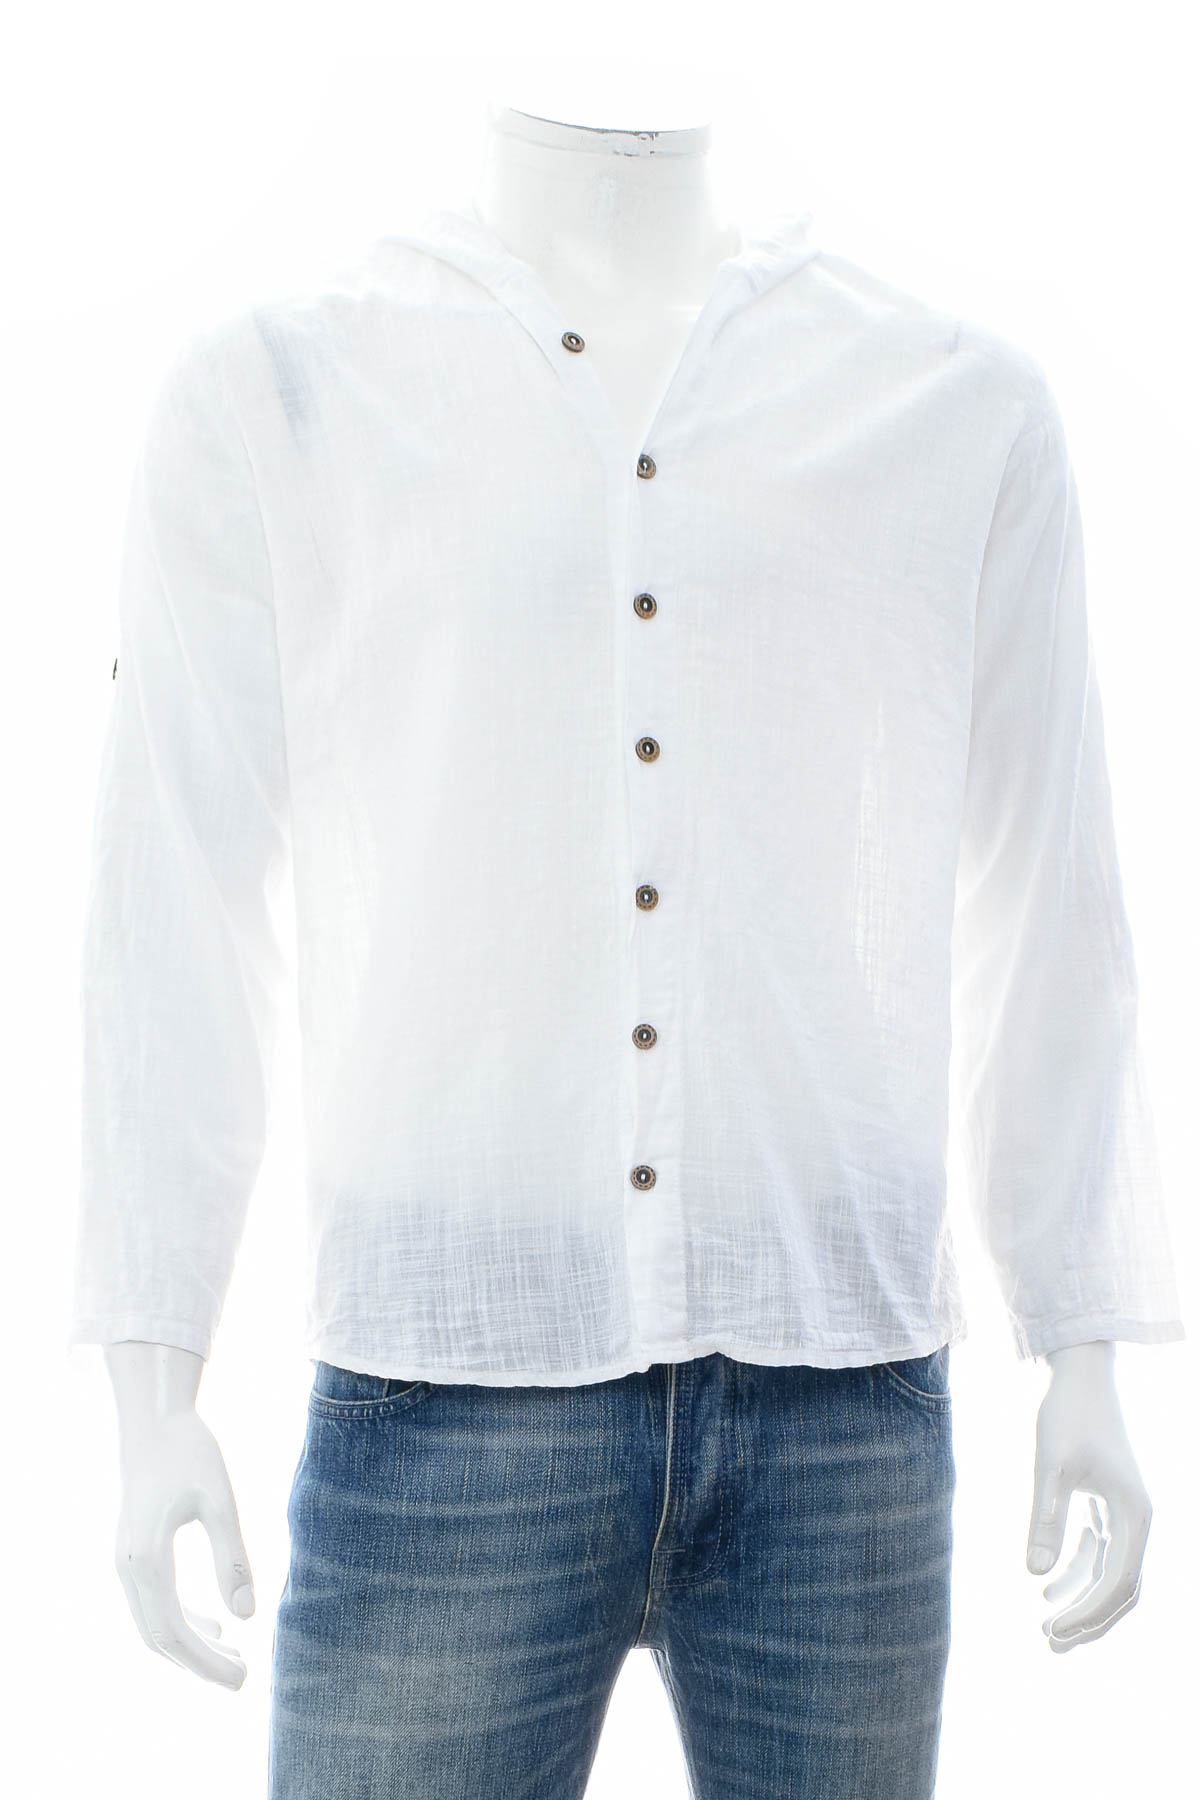 Men's shirt - ATB-D Collection - 0